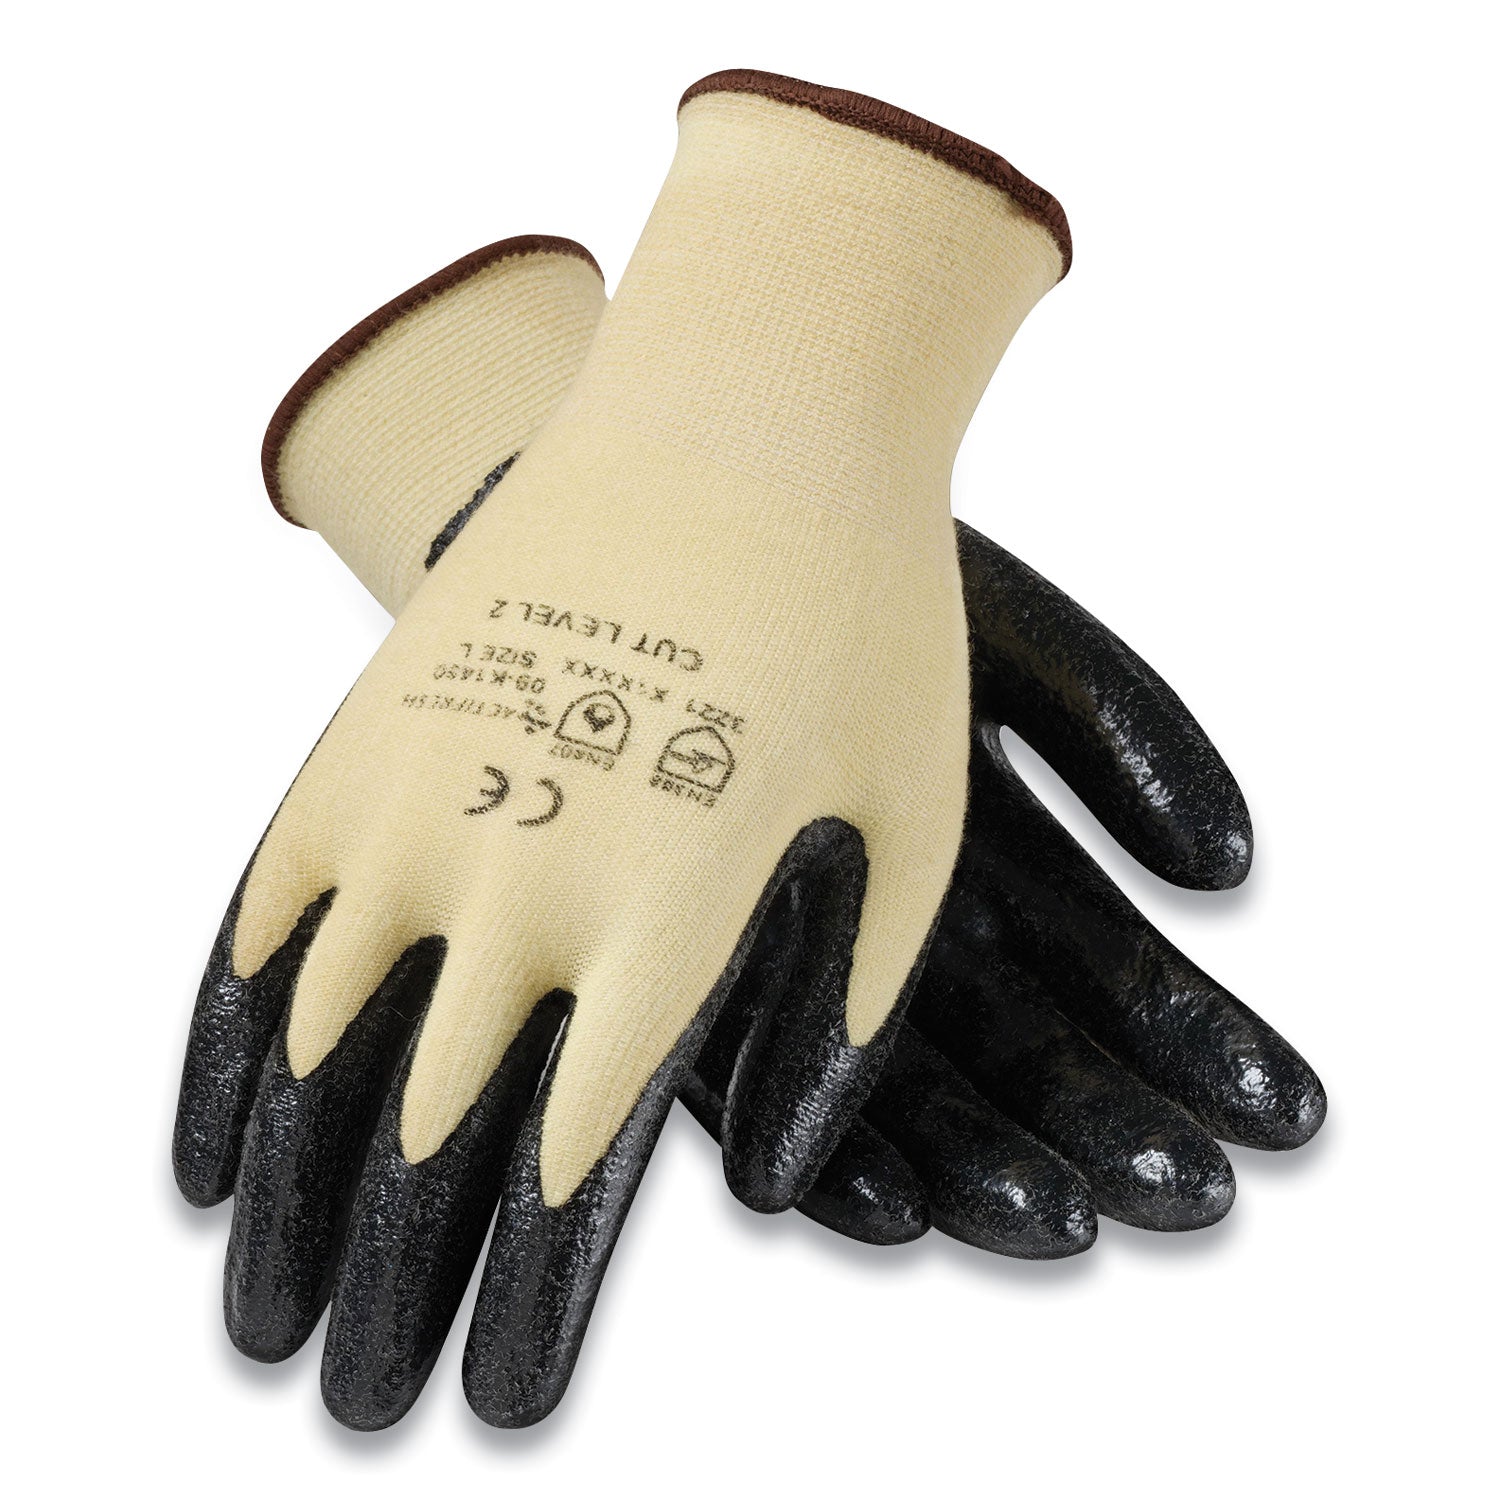 kev-seamless-knit-kevlar-gloves-medium-yellow-black-12-pairs_pid09k1450m - 1